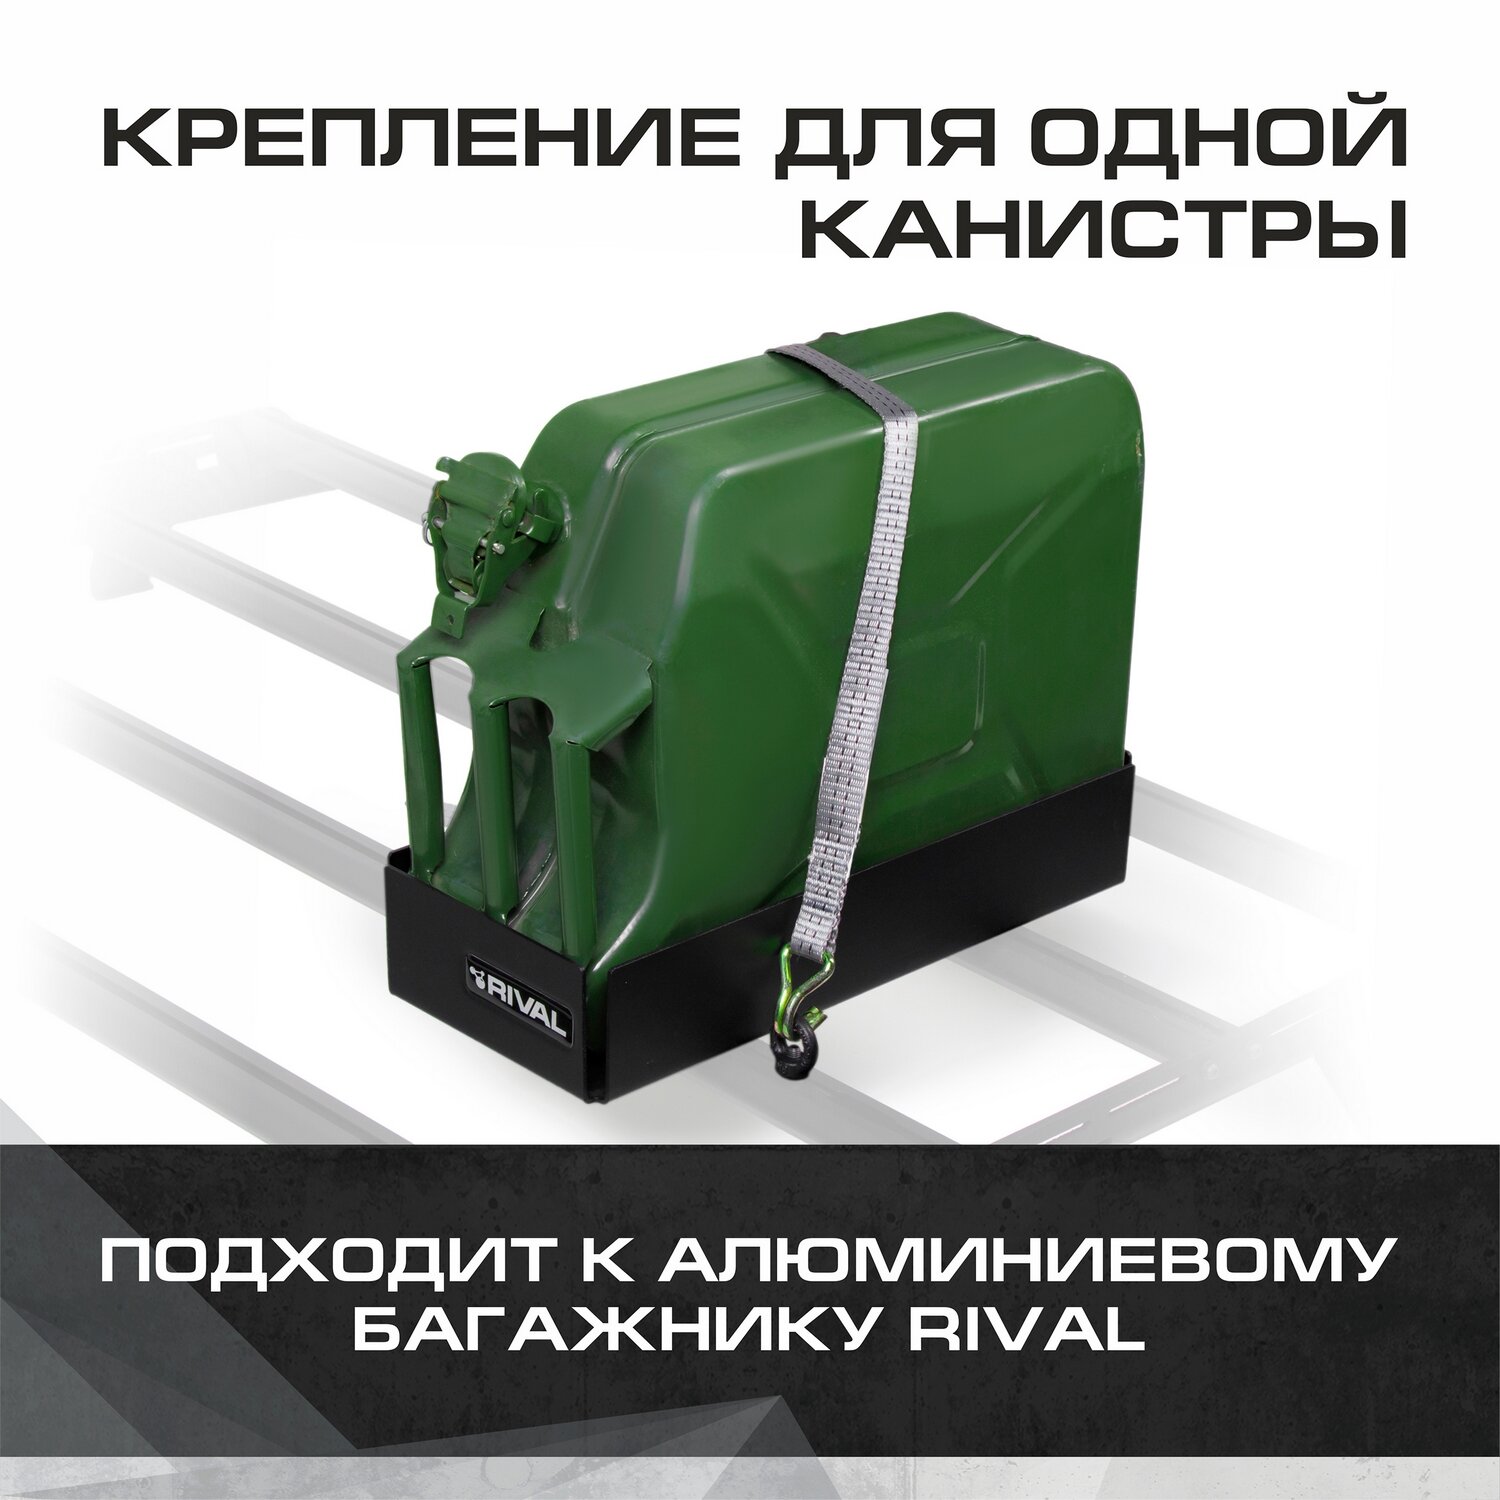 Крепление одной канистры для багажников Rival алюминий с крепежом 2MD.0017.2